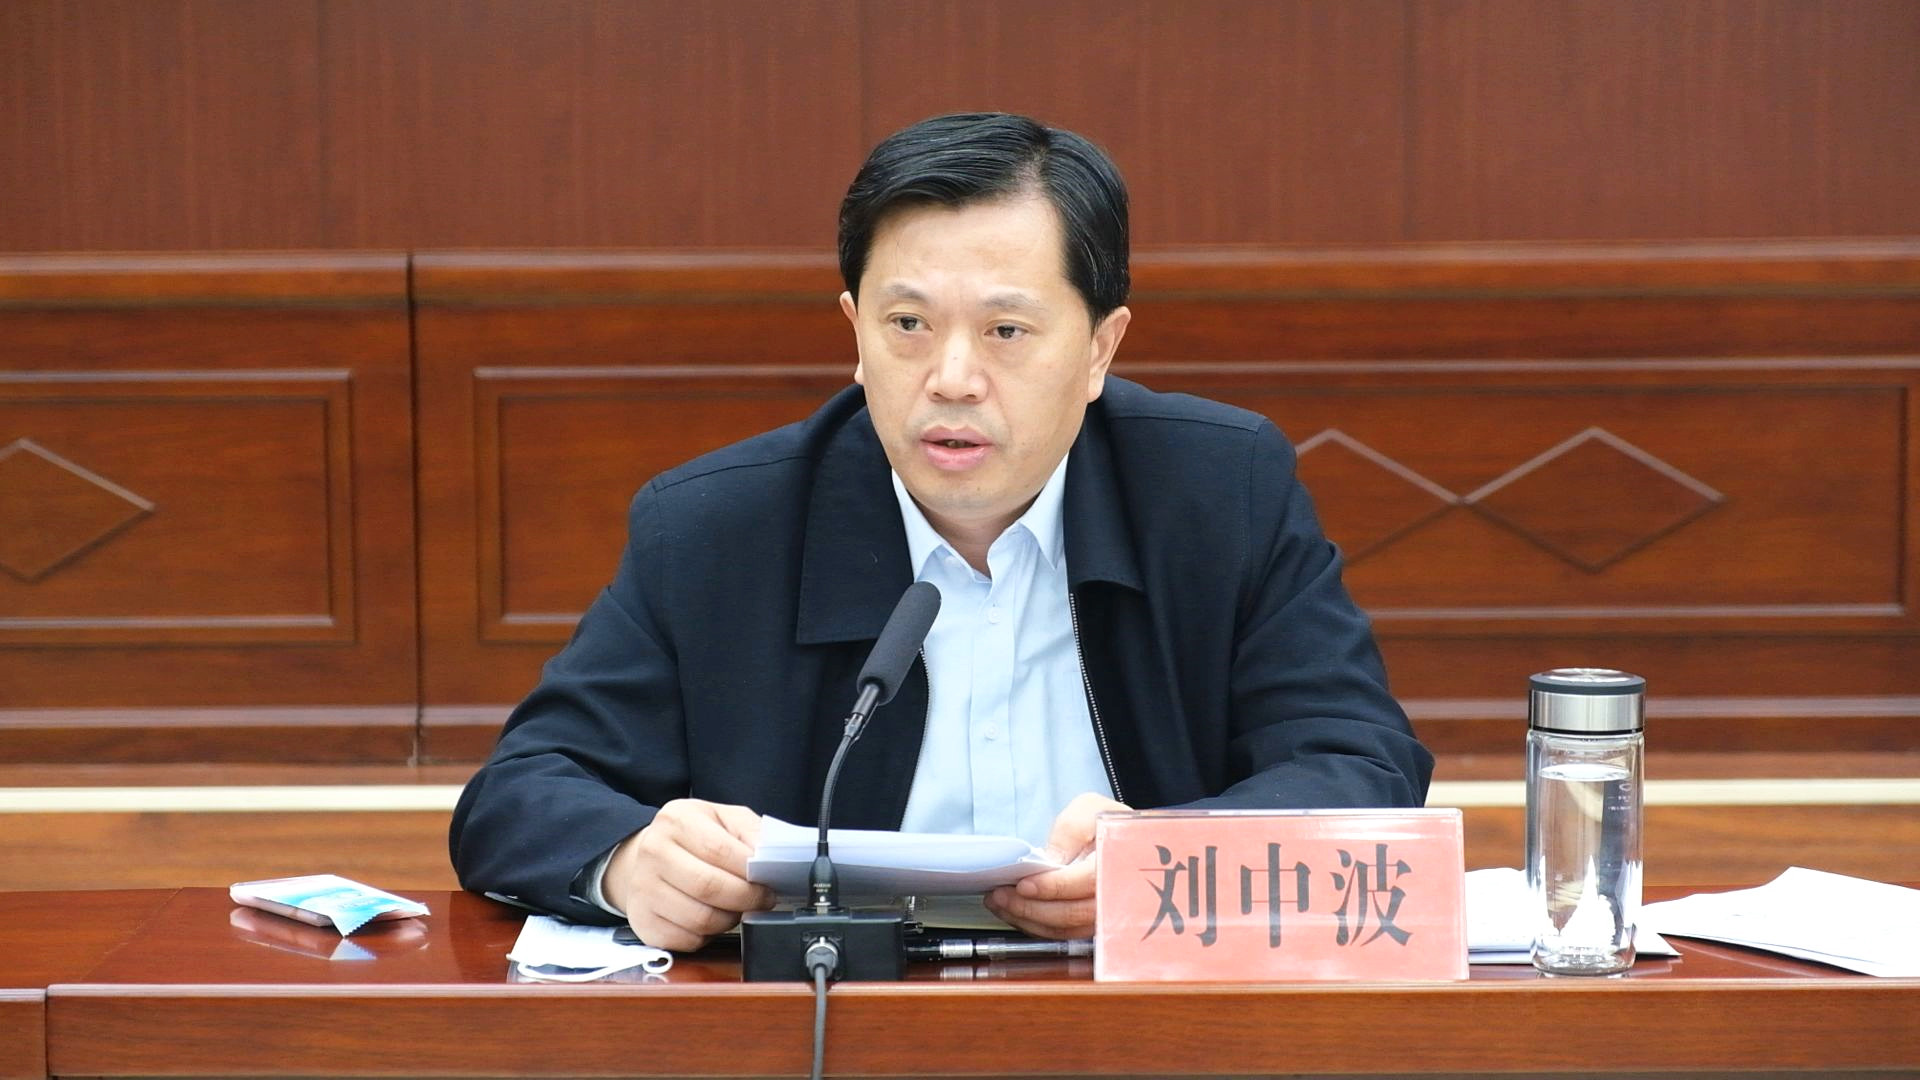 市中区委副书记,区长刘中波出席会议并讲话.